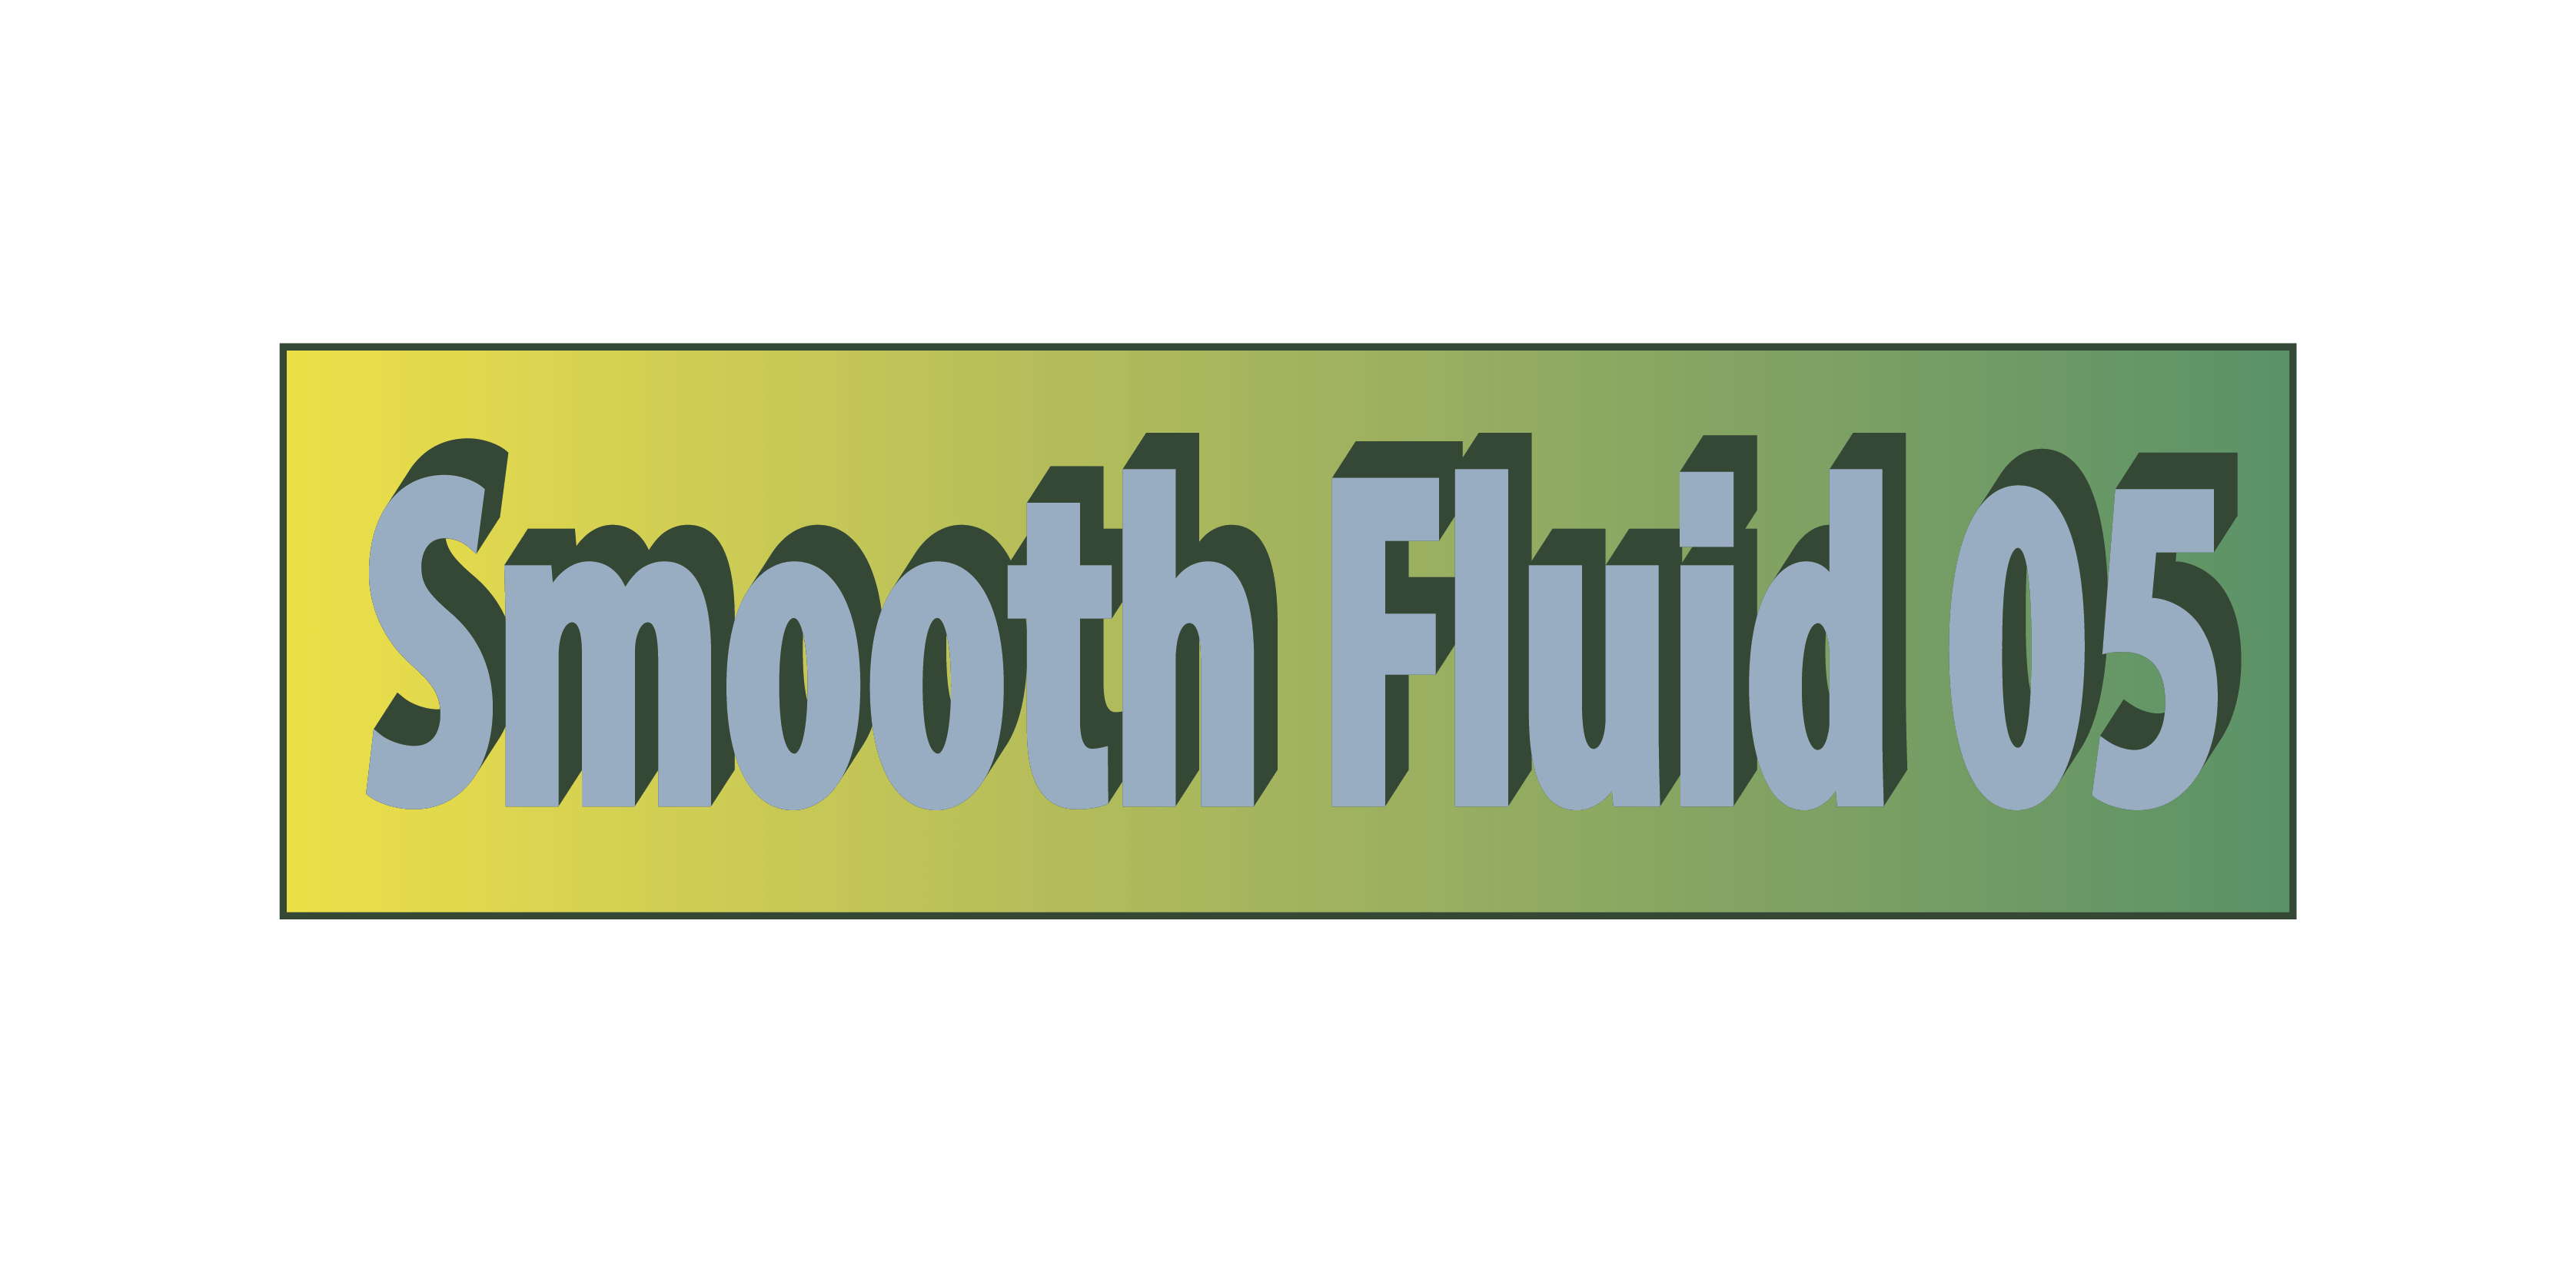 Smooth Fluid 05 (SF-05)